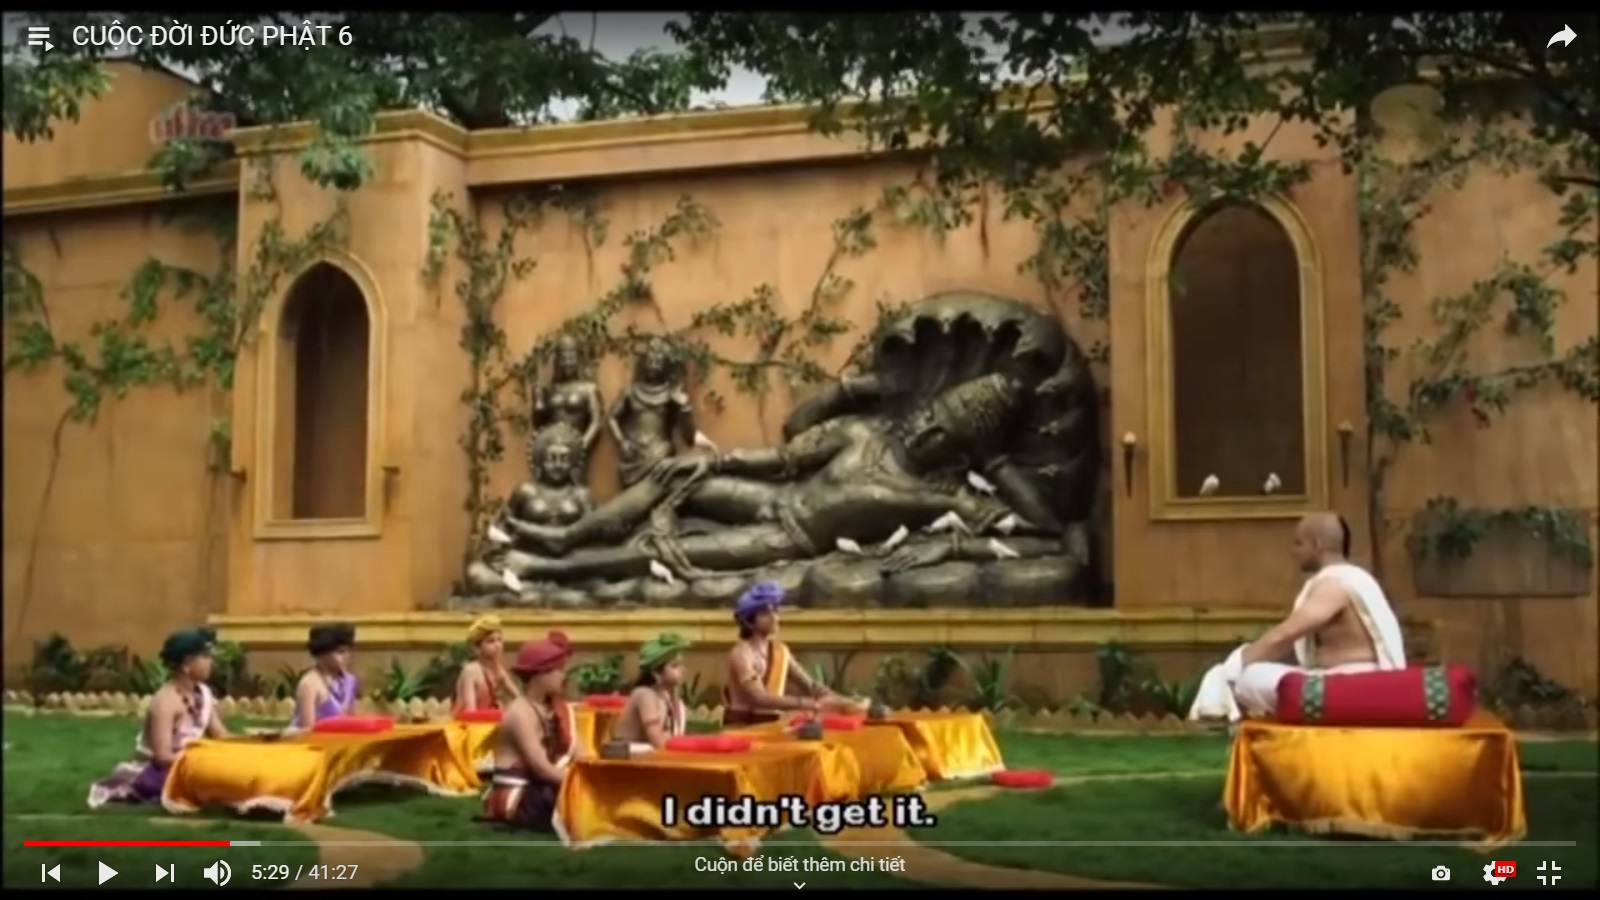 Cuộc đời của Đức Phật (Phim tập 6)